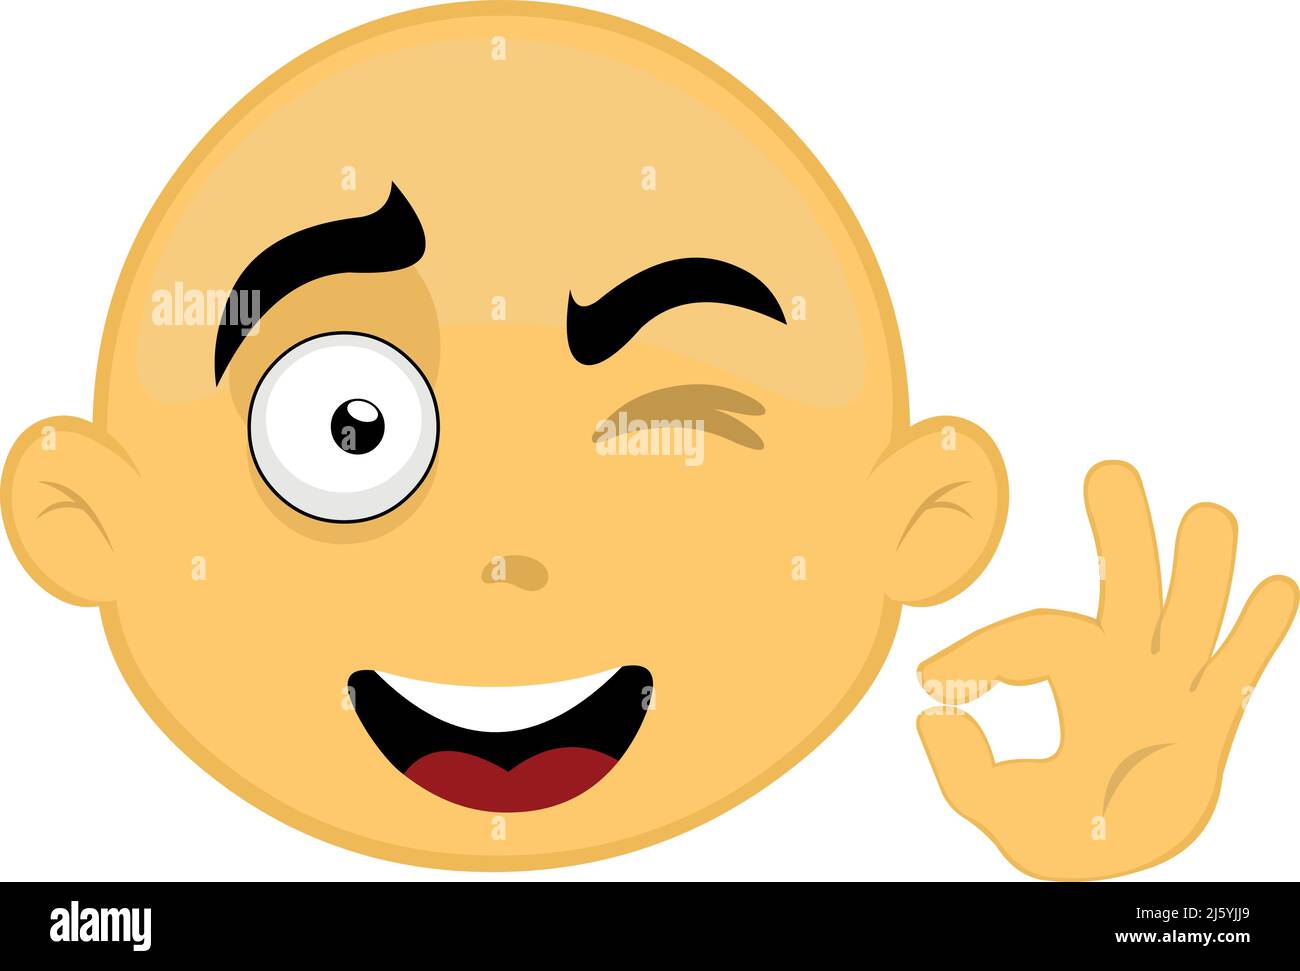 Vektor-Illustration eines gelben, kahlköpfigen Zeichentrickfigur Gesicht winken und machen eine ok oder perfekte Hand Geste Stock Vektor